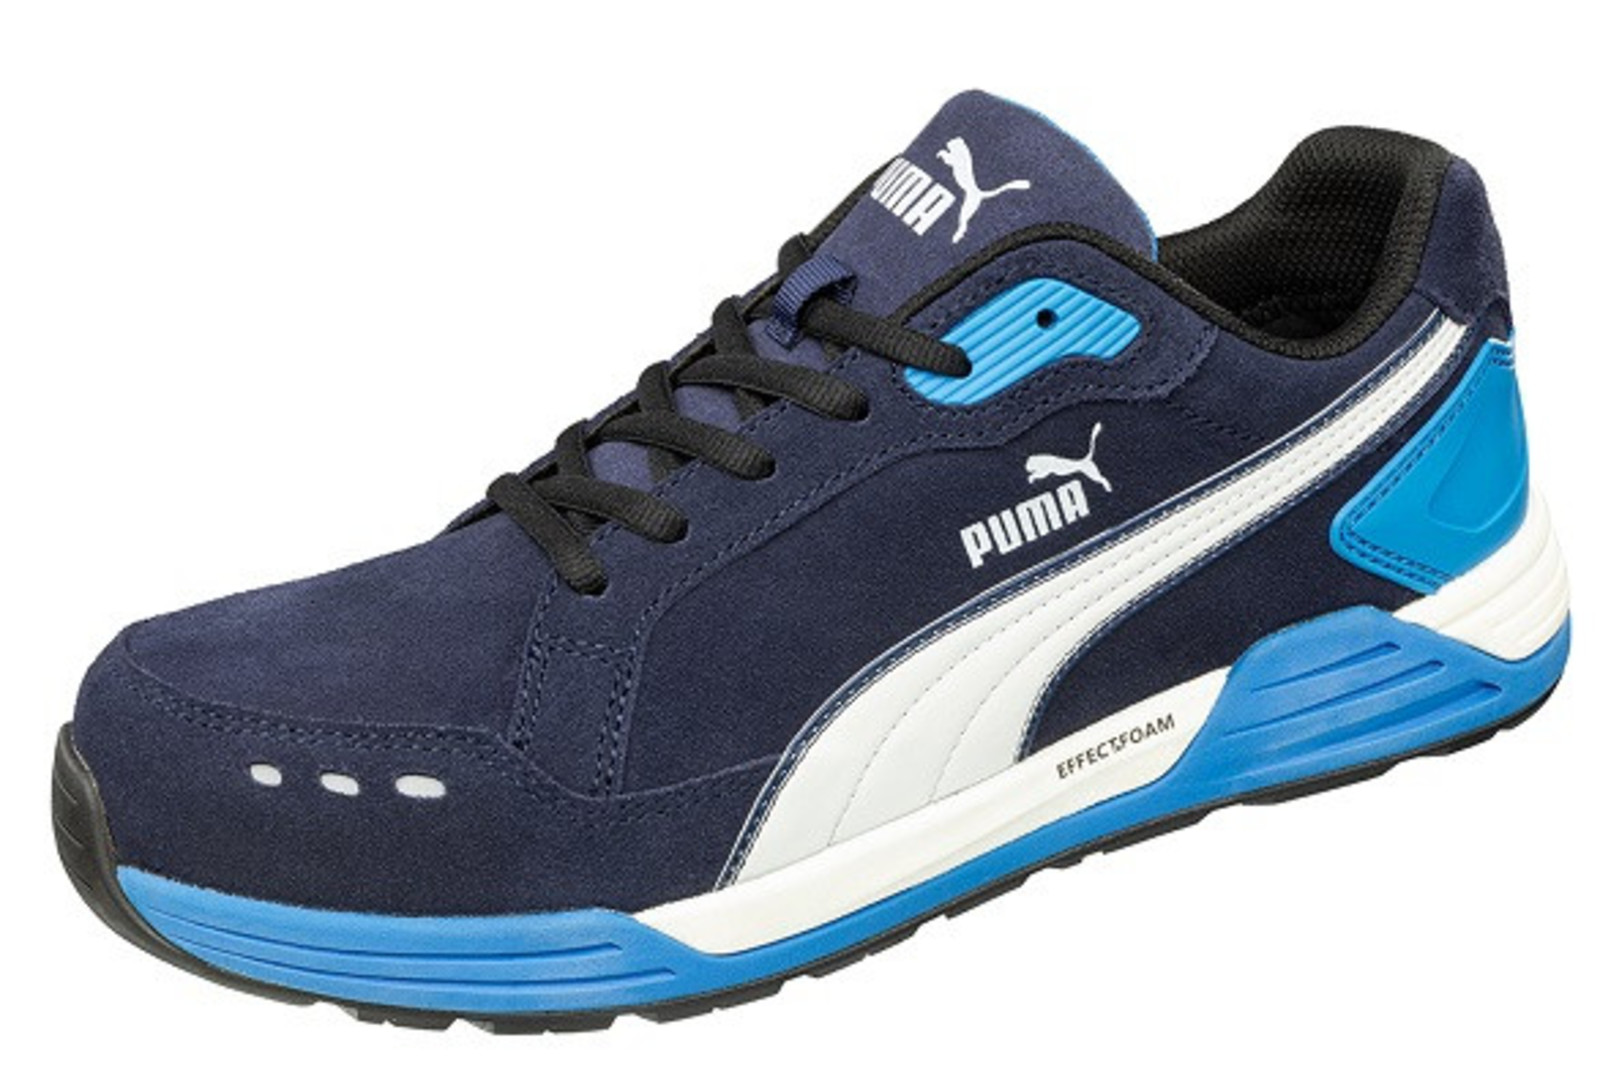 Bezpečnostná obuv Puma Airtwist S3 - veľkosť: 40, farba: modrá